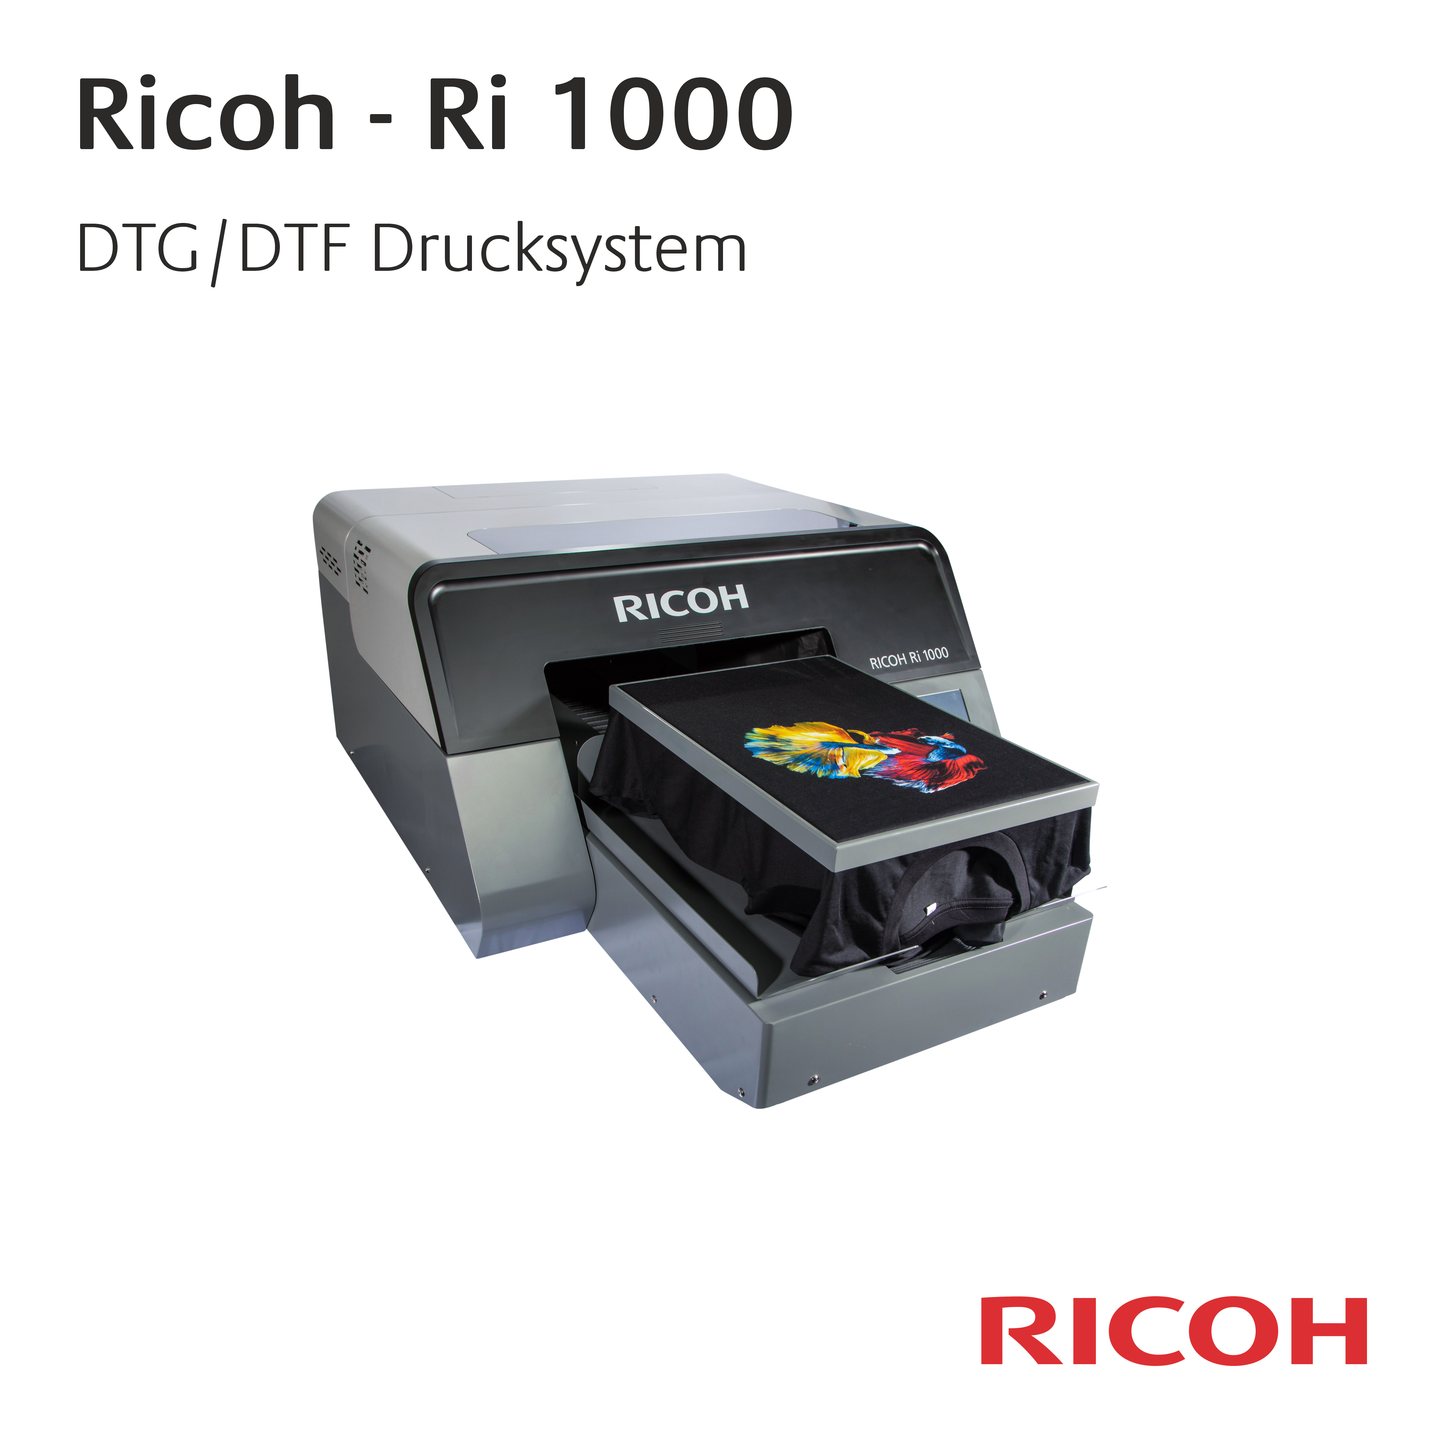 Ricoh Ri 1000 - Einpaletten-Drucksystem für DTG und DTF